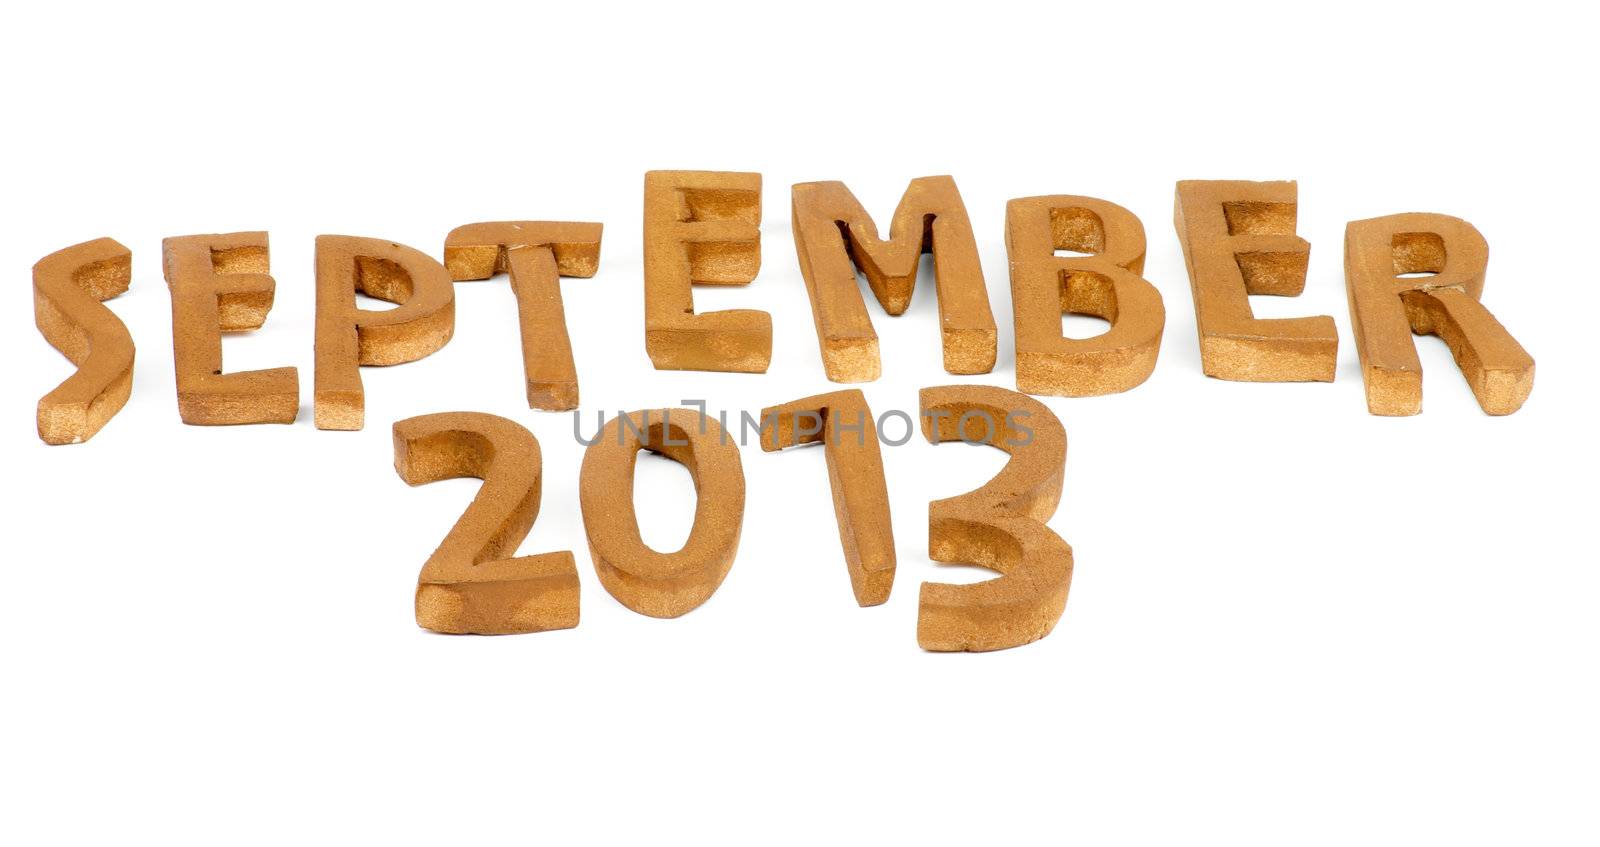 Wooden Handmade Letters "September 2013" isolated on white background